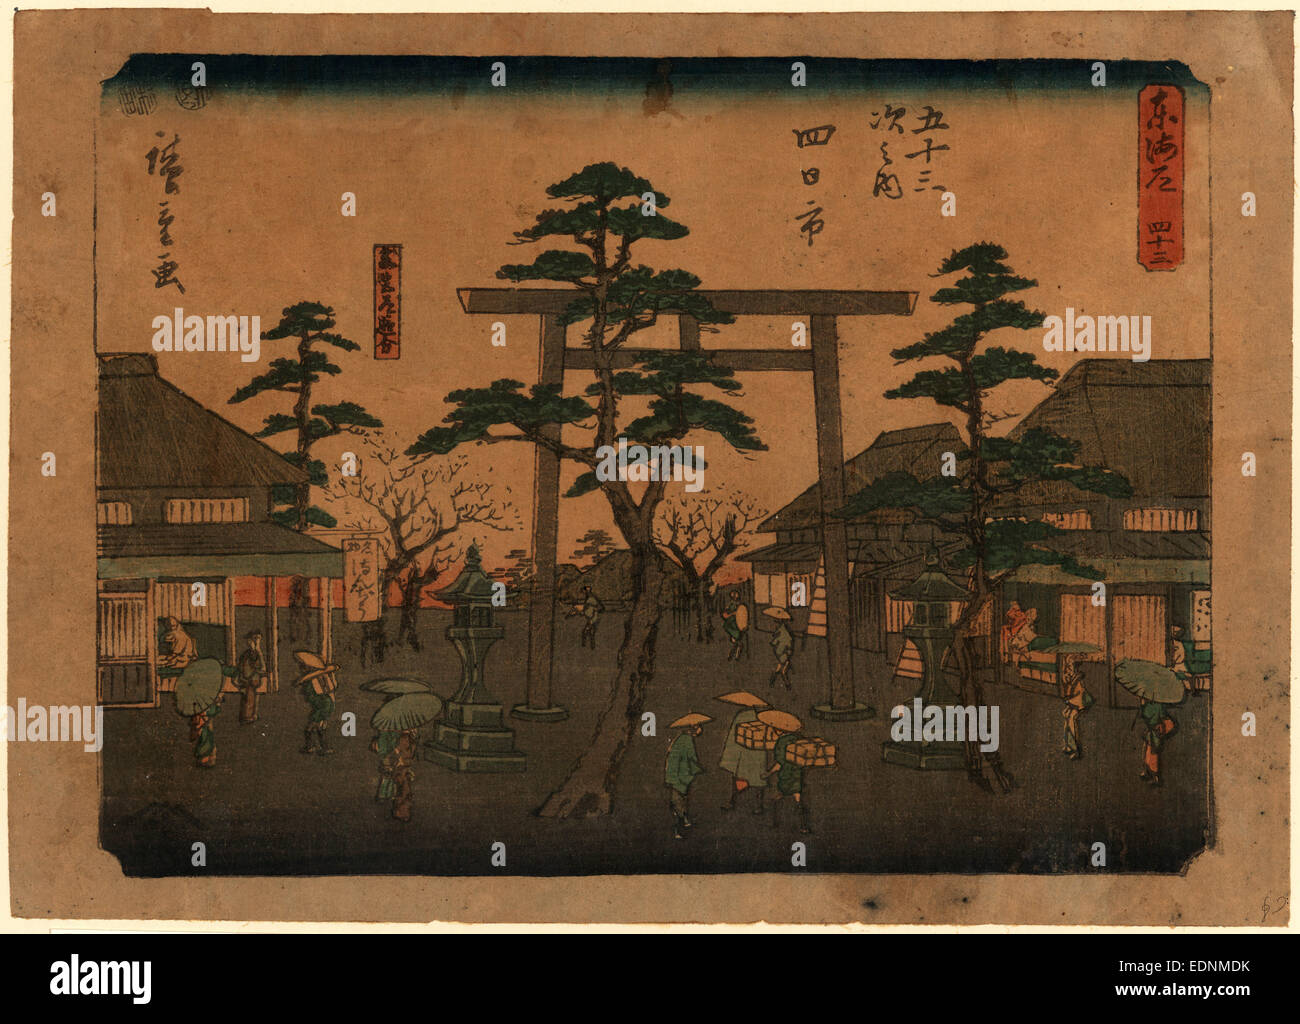 Yokkaichi, Ando Hiroshige,, 1797-1858, l'artiste, [entre 1848 et 1854], 1 tirage : gravure sur bois, couleur ; 18,2 x 25,6 cm, impression a des voyageurs du torii à l'entrée d'un lieu de culte à l'Yokkaichi station sur la route de Tokaido. Banque D'Images